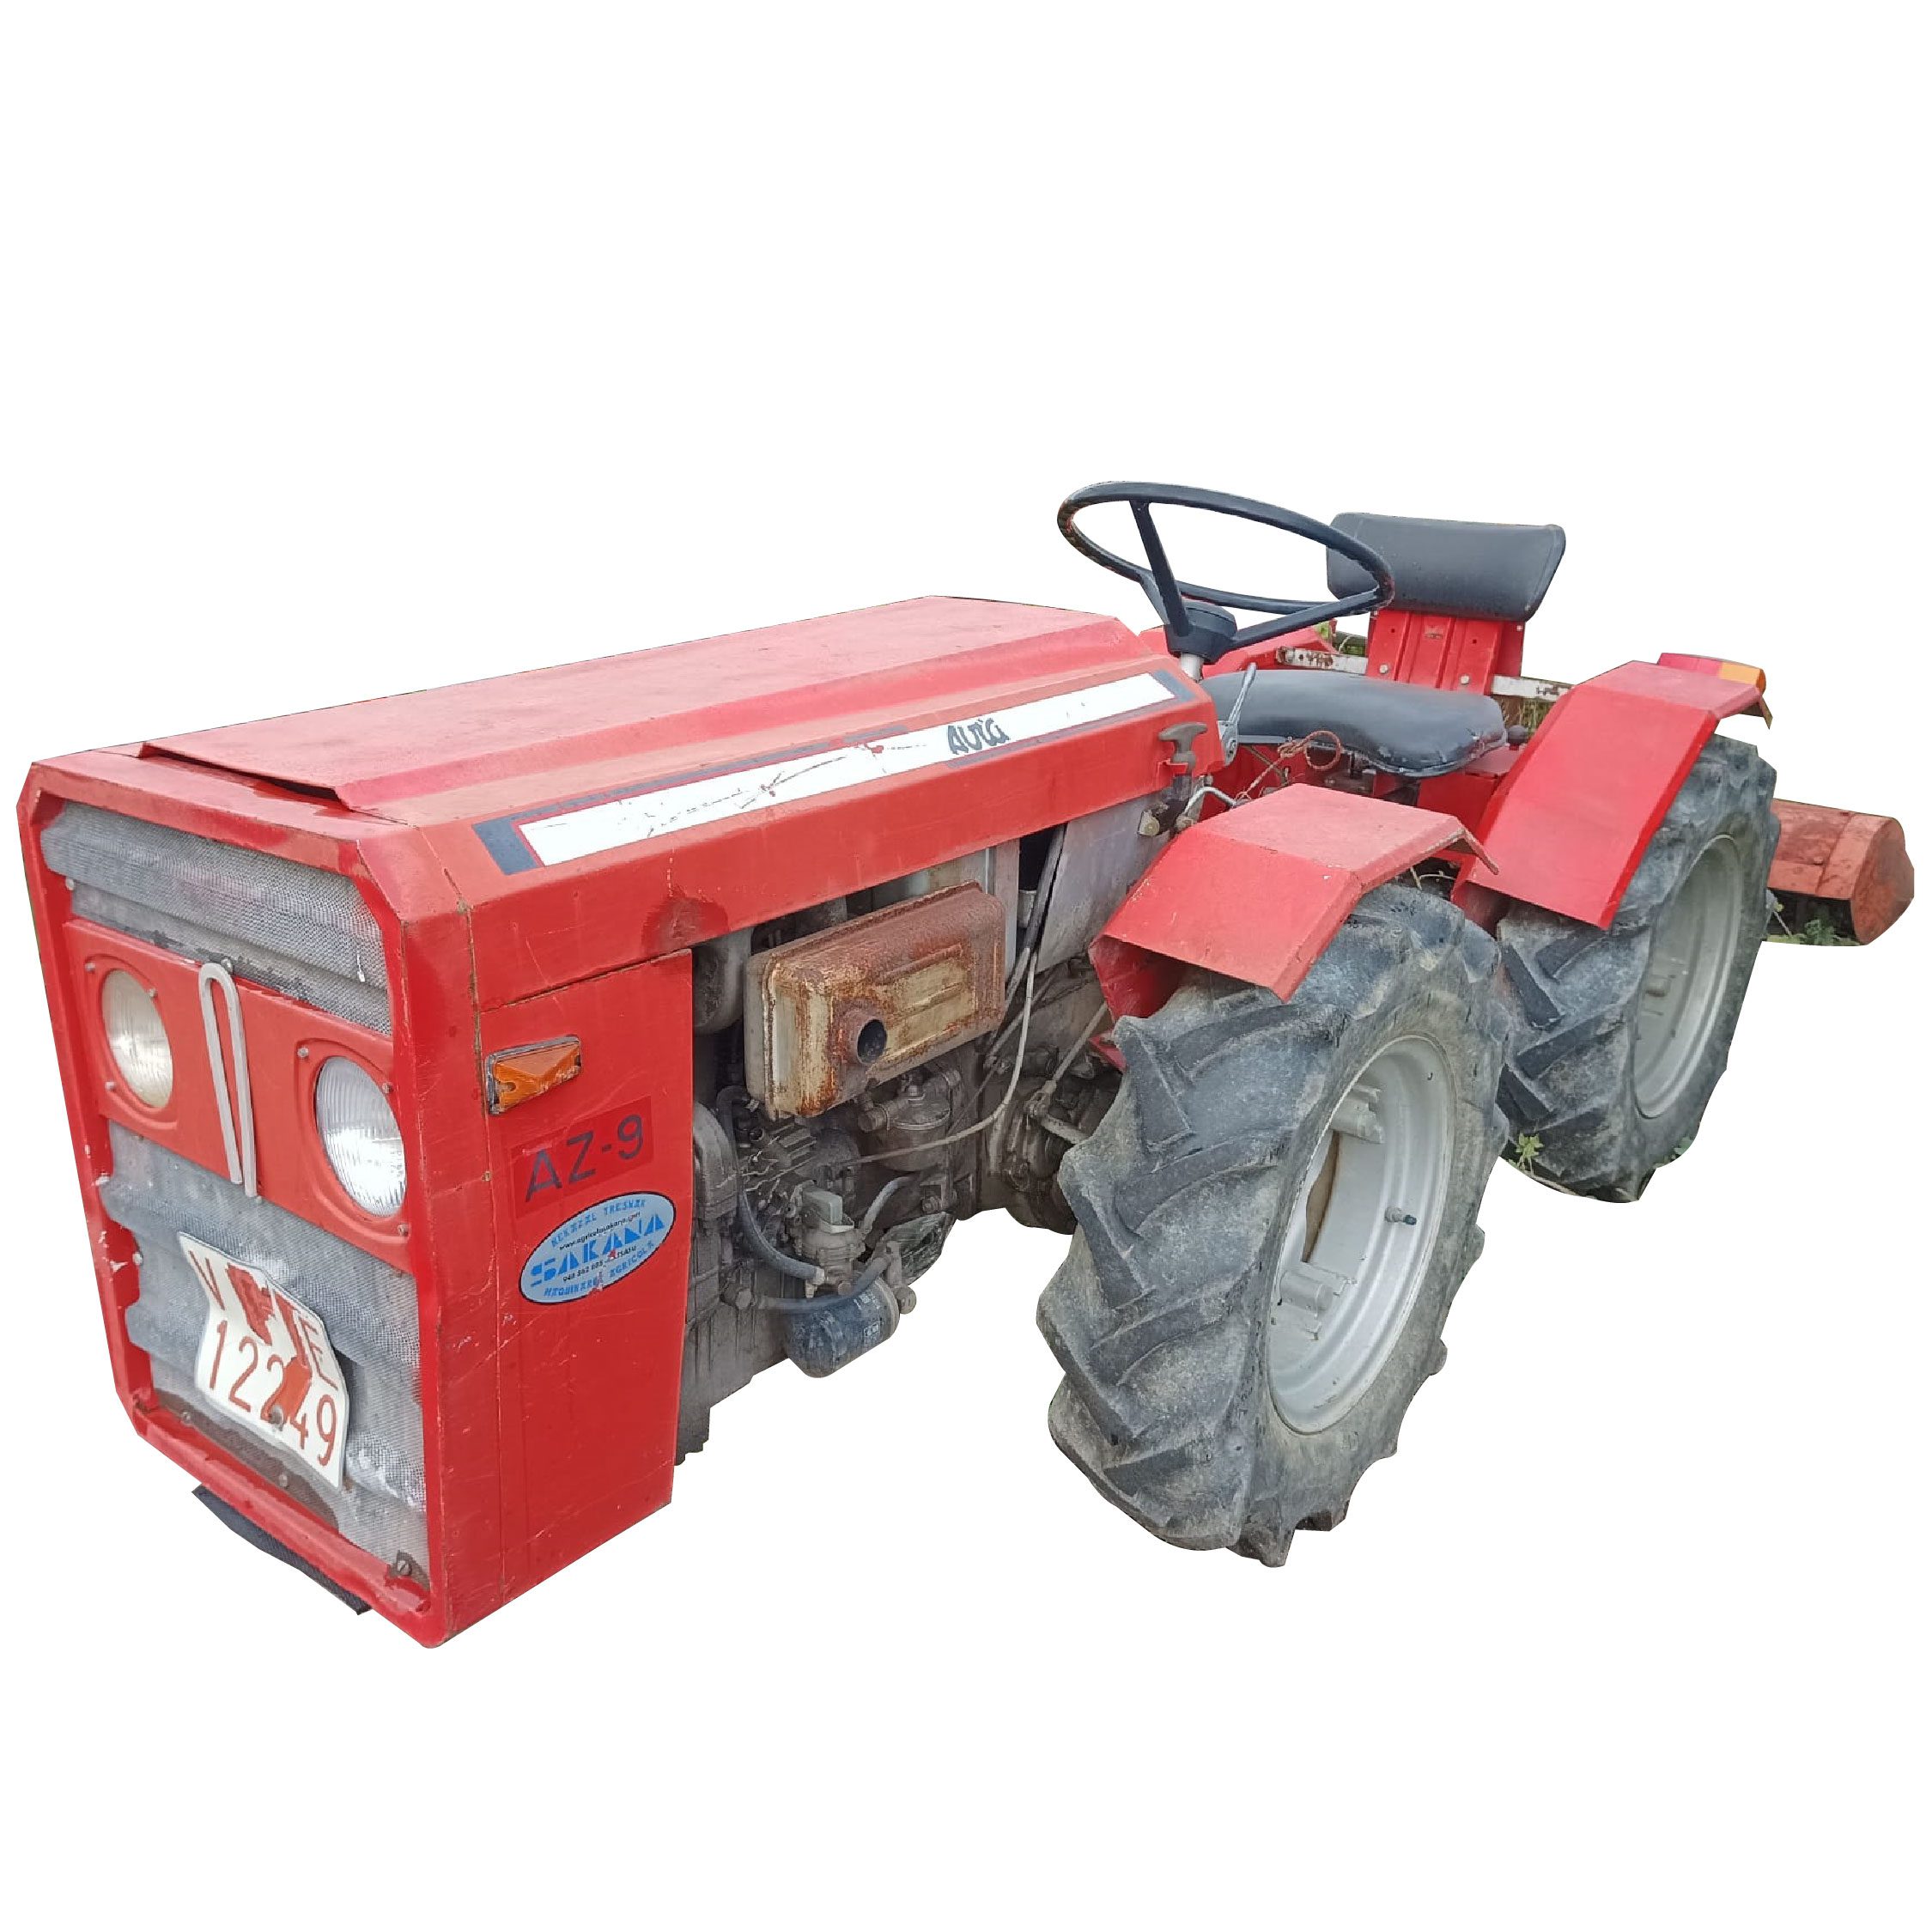 Tractor articulado Avia Ebro / 4500€ + IVA